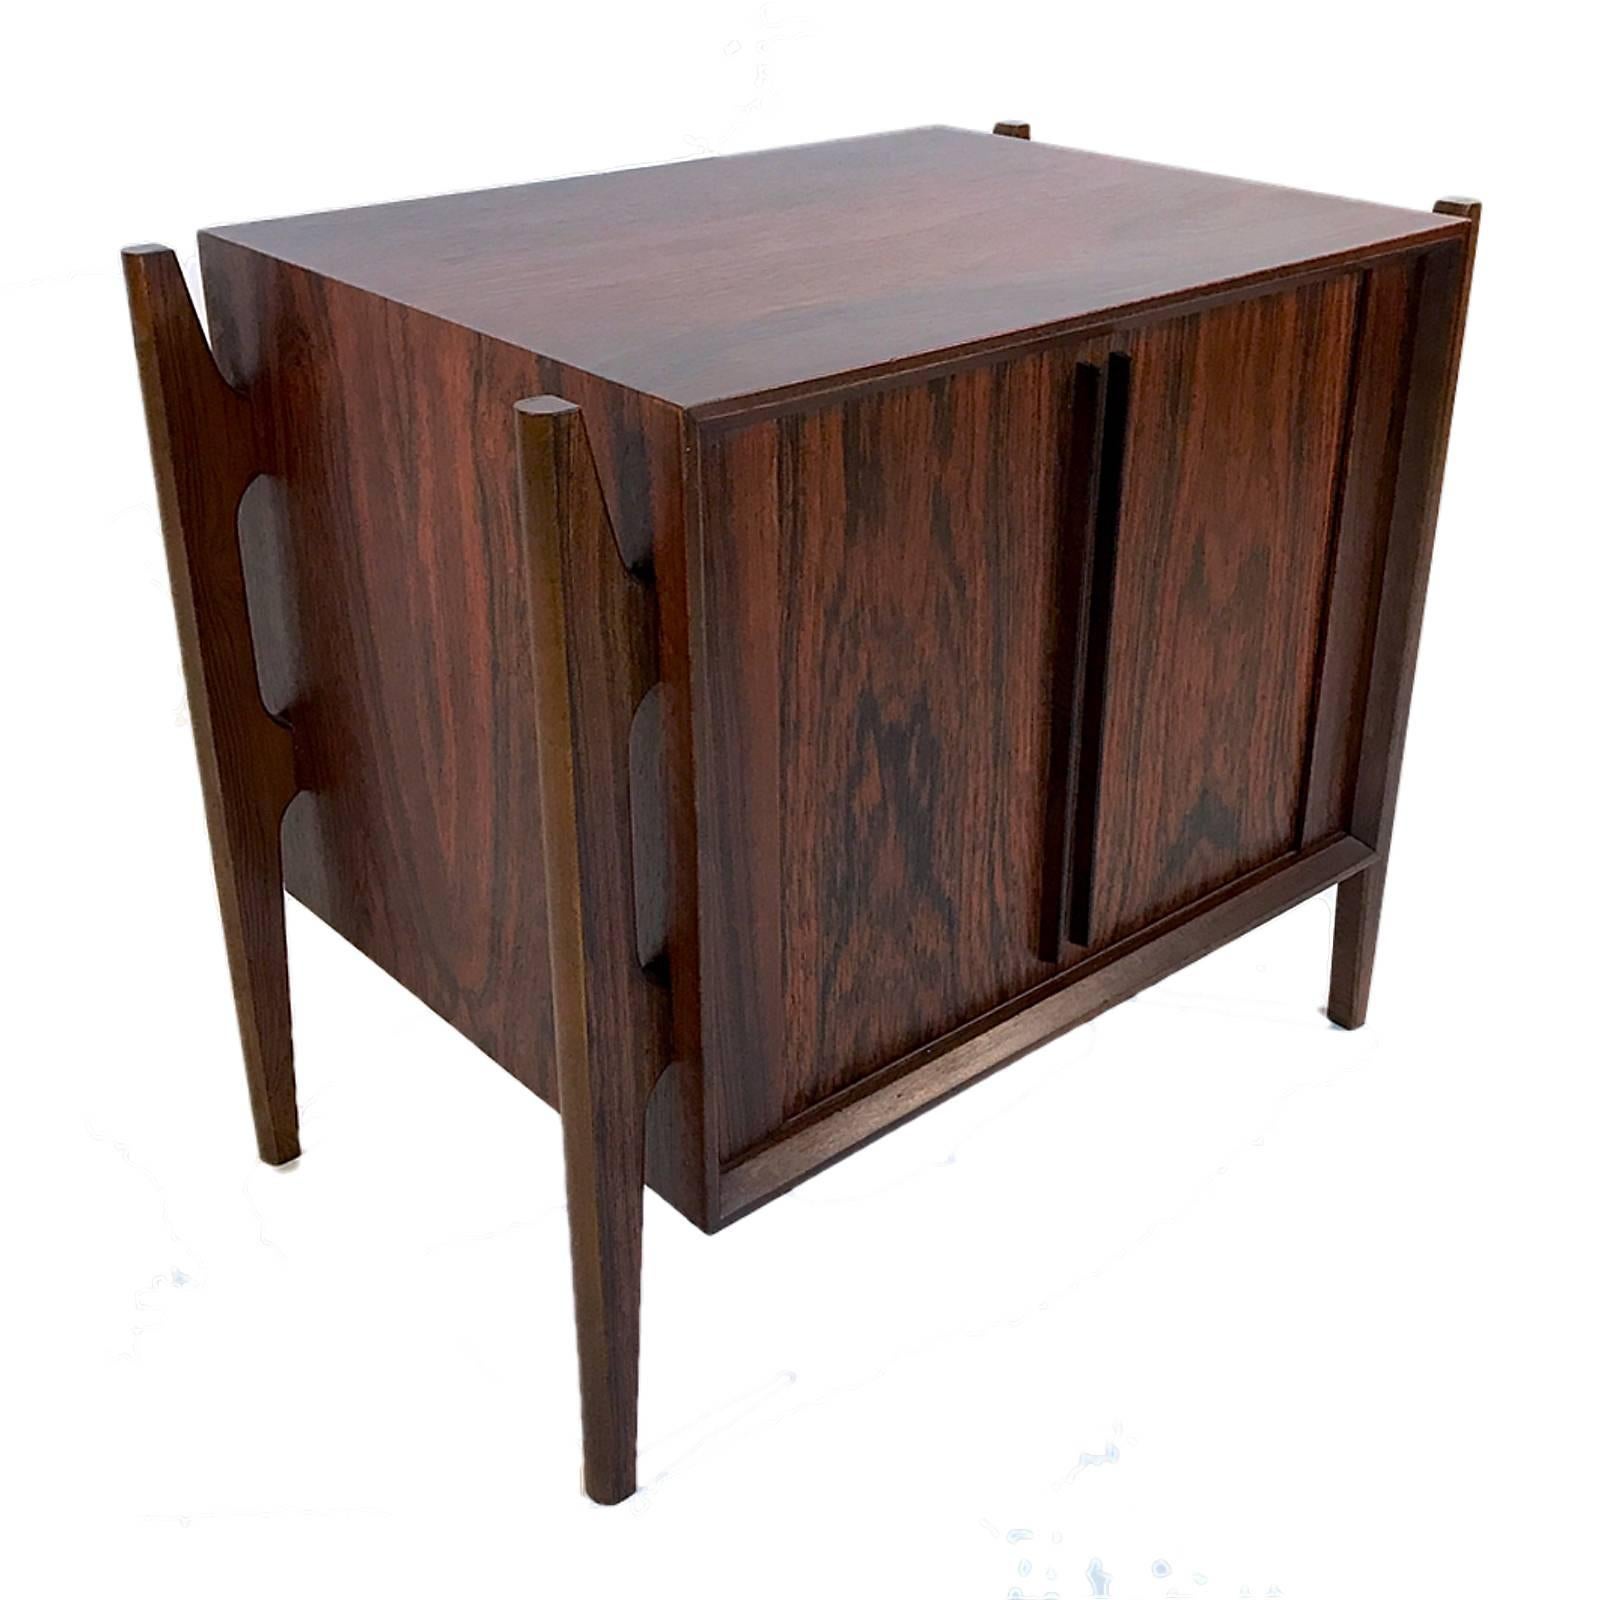 Jorgen Clausen for Brande Møbelfabrik rosewood nightstands with tambour door and an adjustable interior shelf.